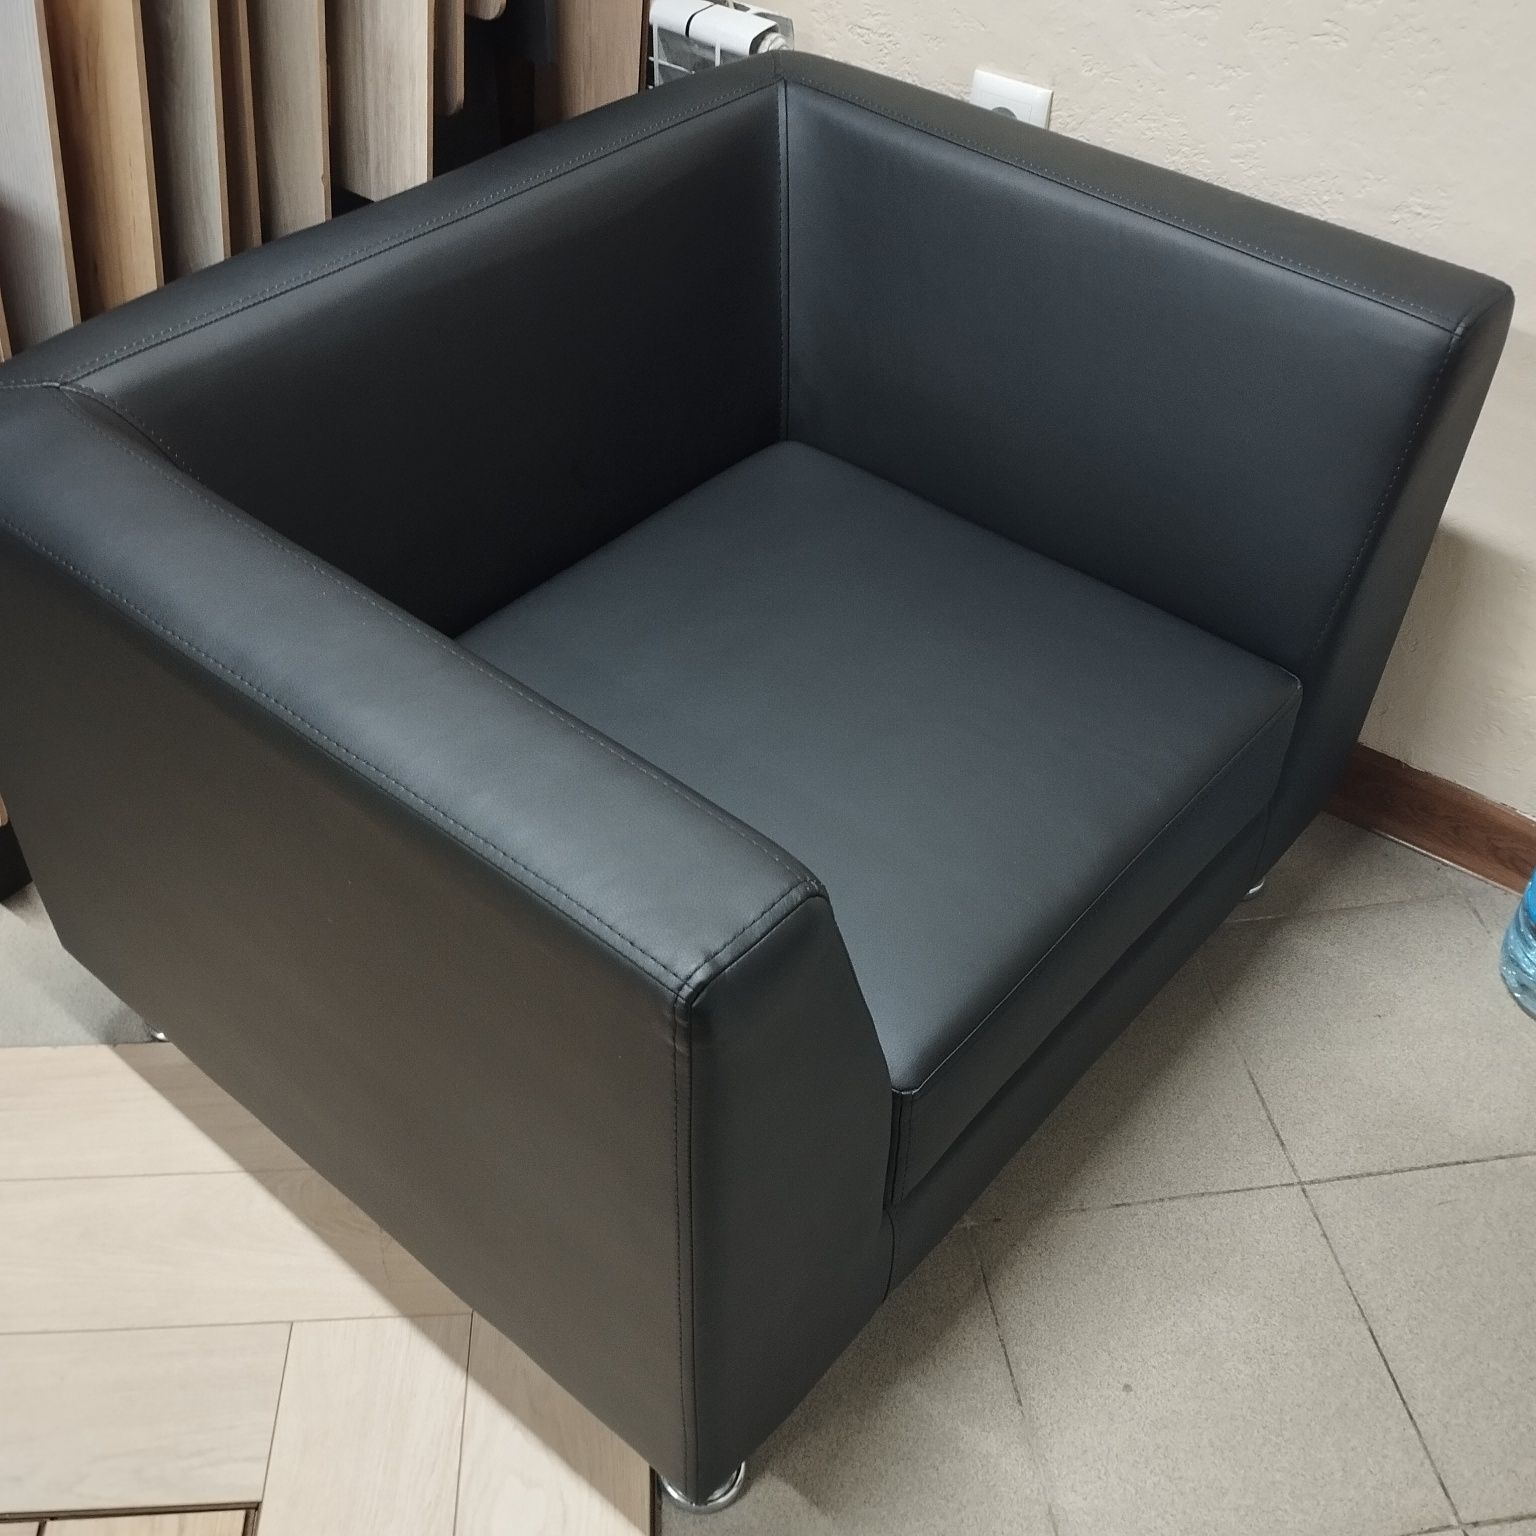 Кожанный диван и кресло